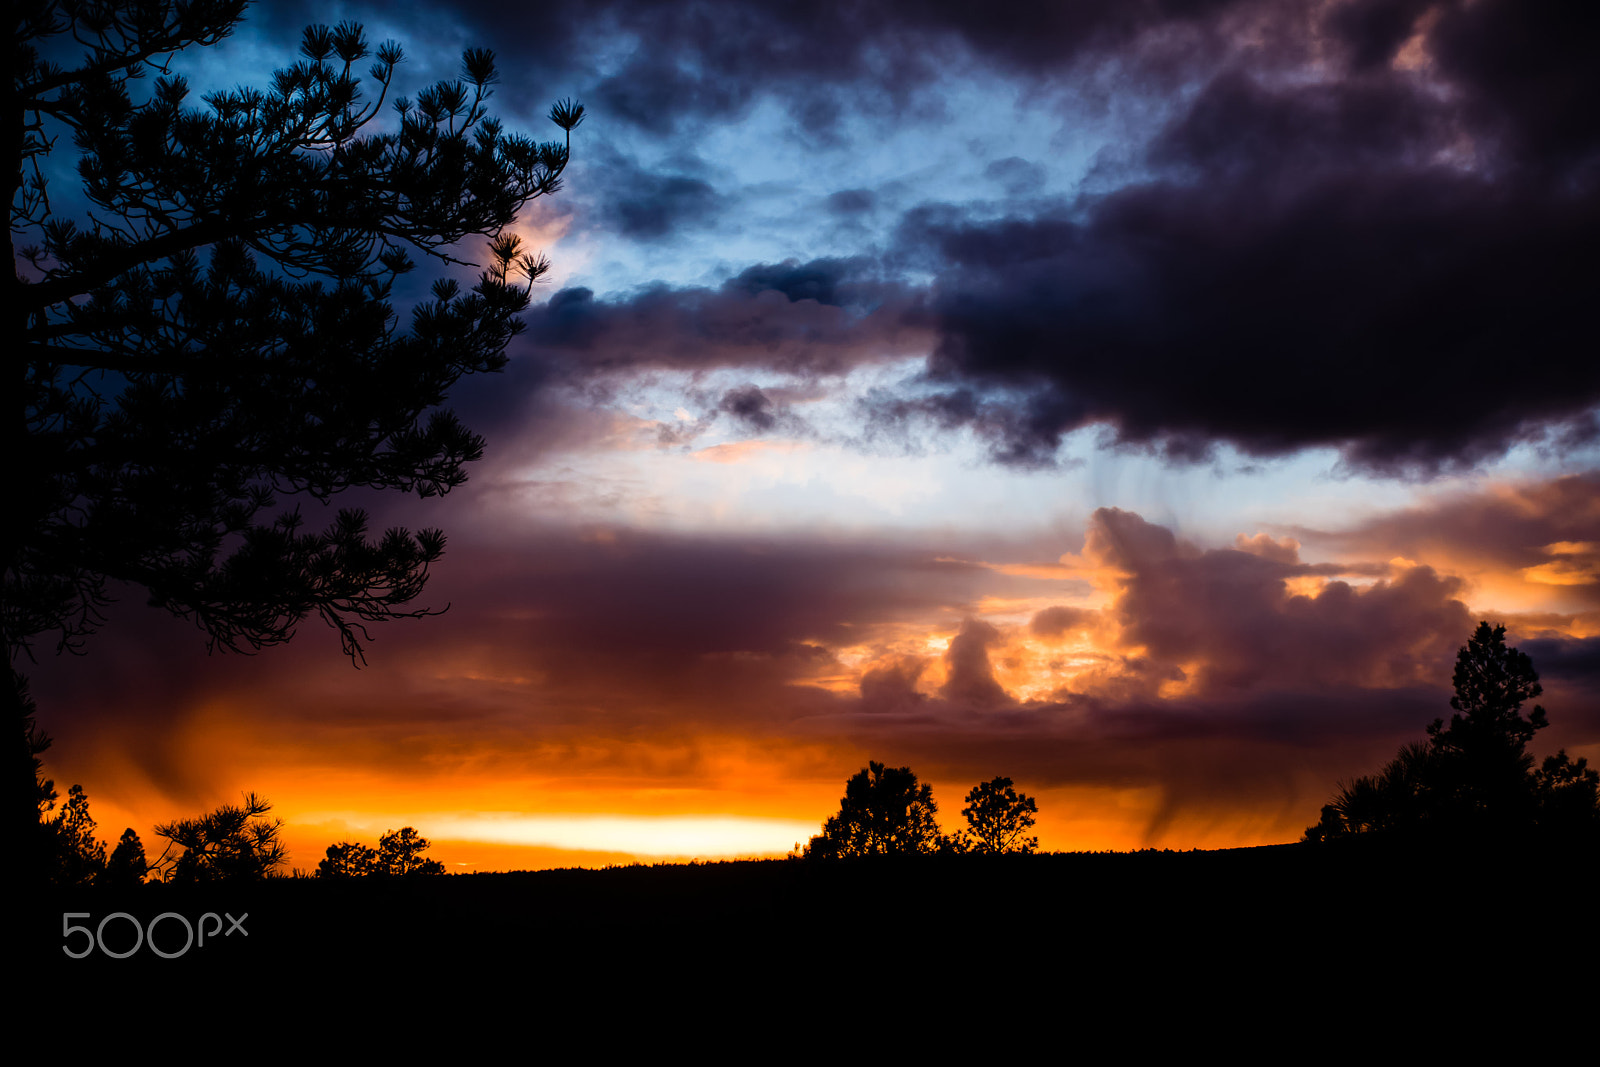 Nikon D5300 sample photo. Pagosa sunset 2014-11-20 photography